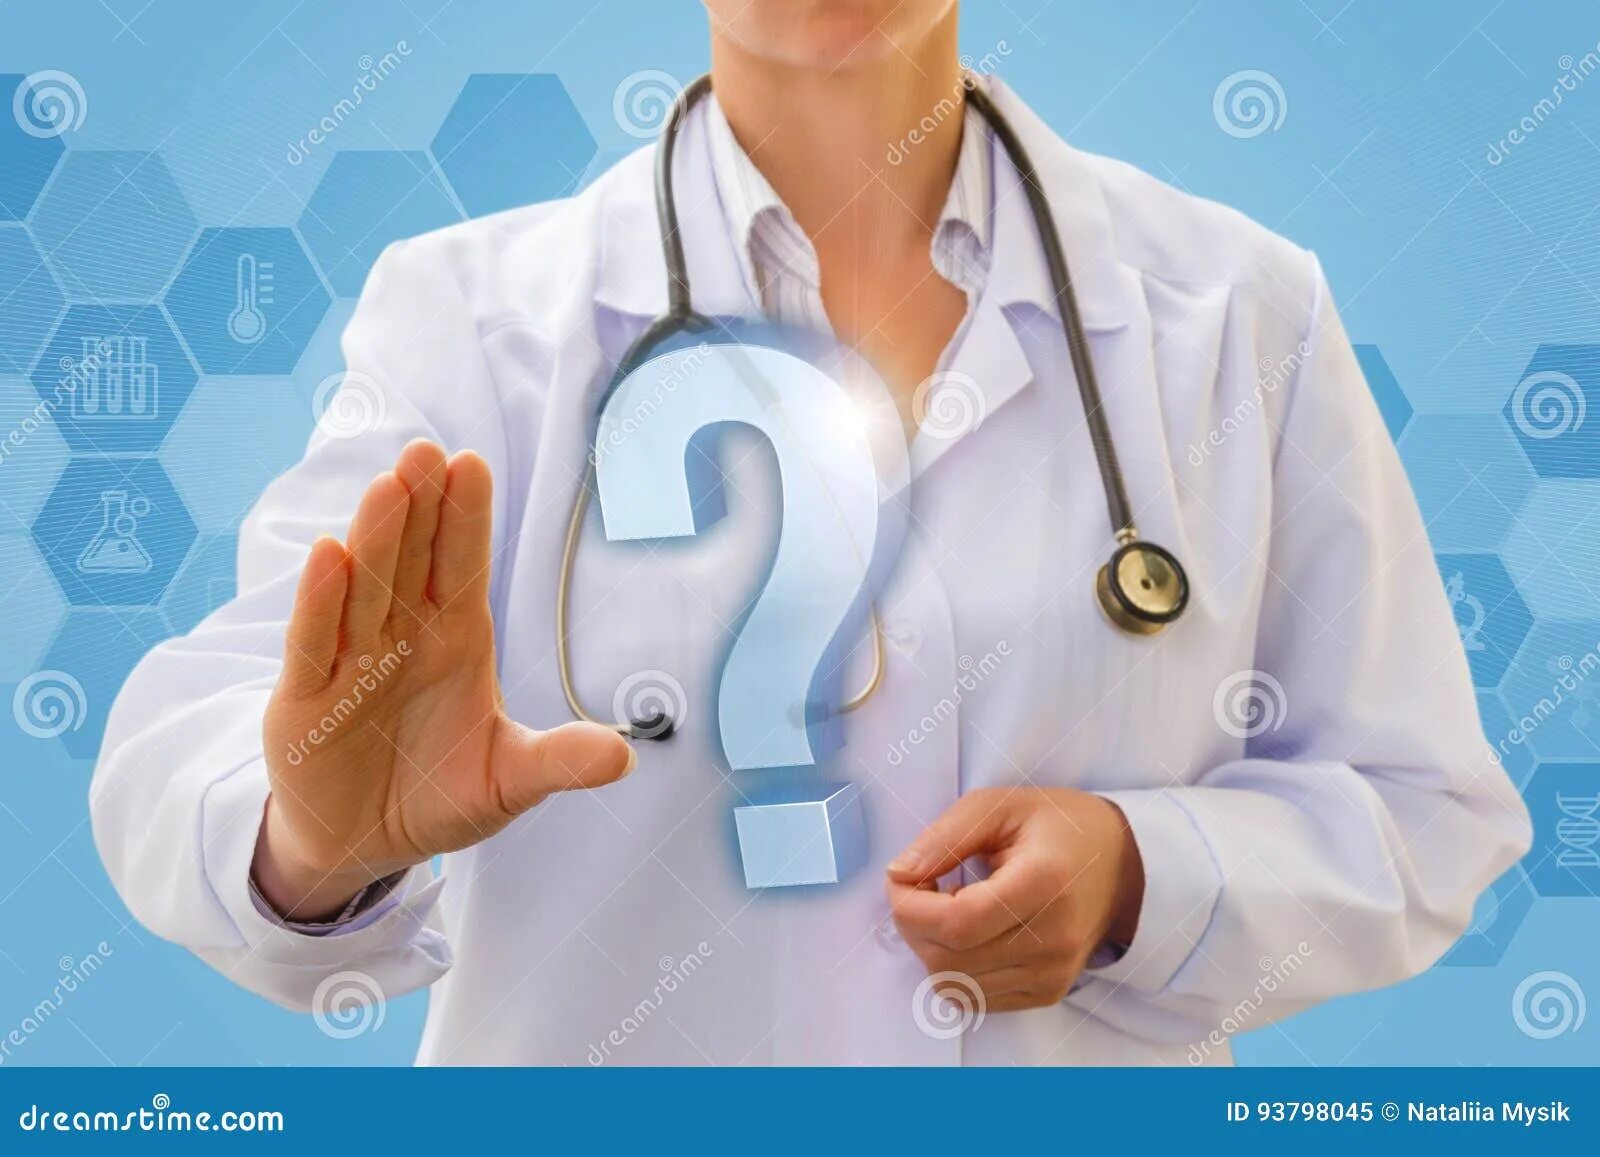 Вопросы врачу найдены. Вопрос врачу. Врач и знак вопроса. Вопросы медикам. Врач с вопросительным знаком.